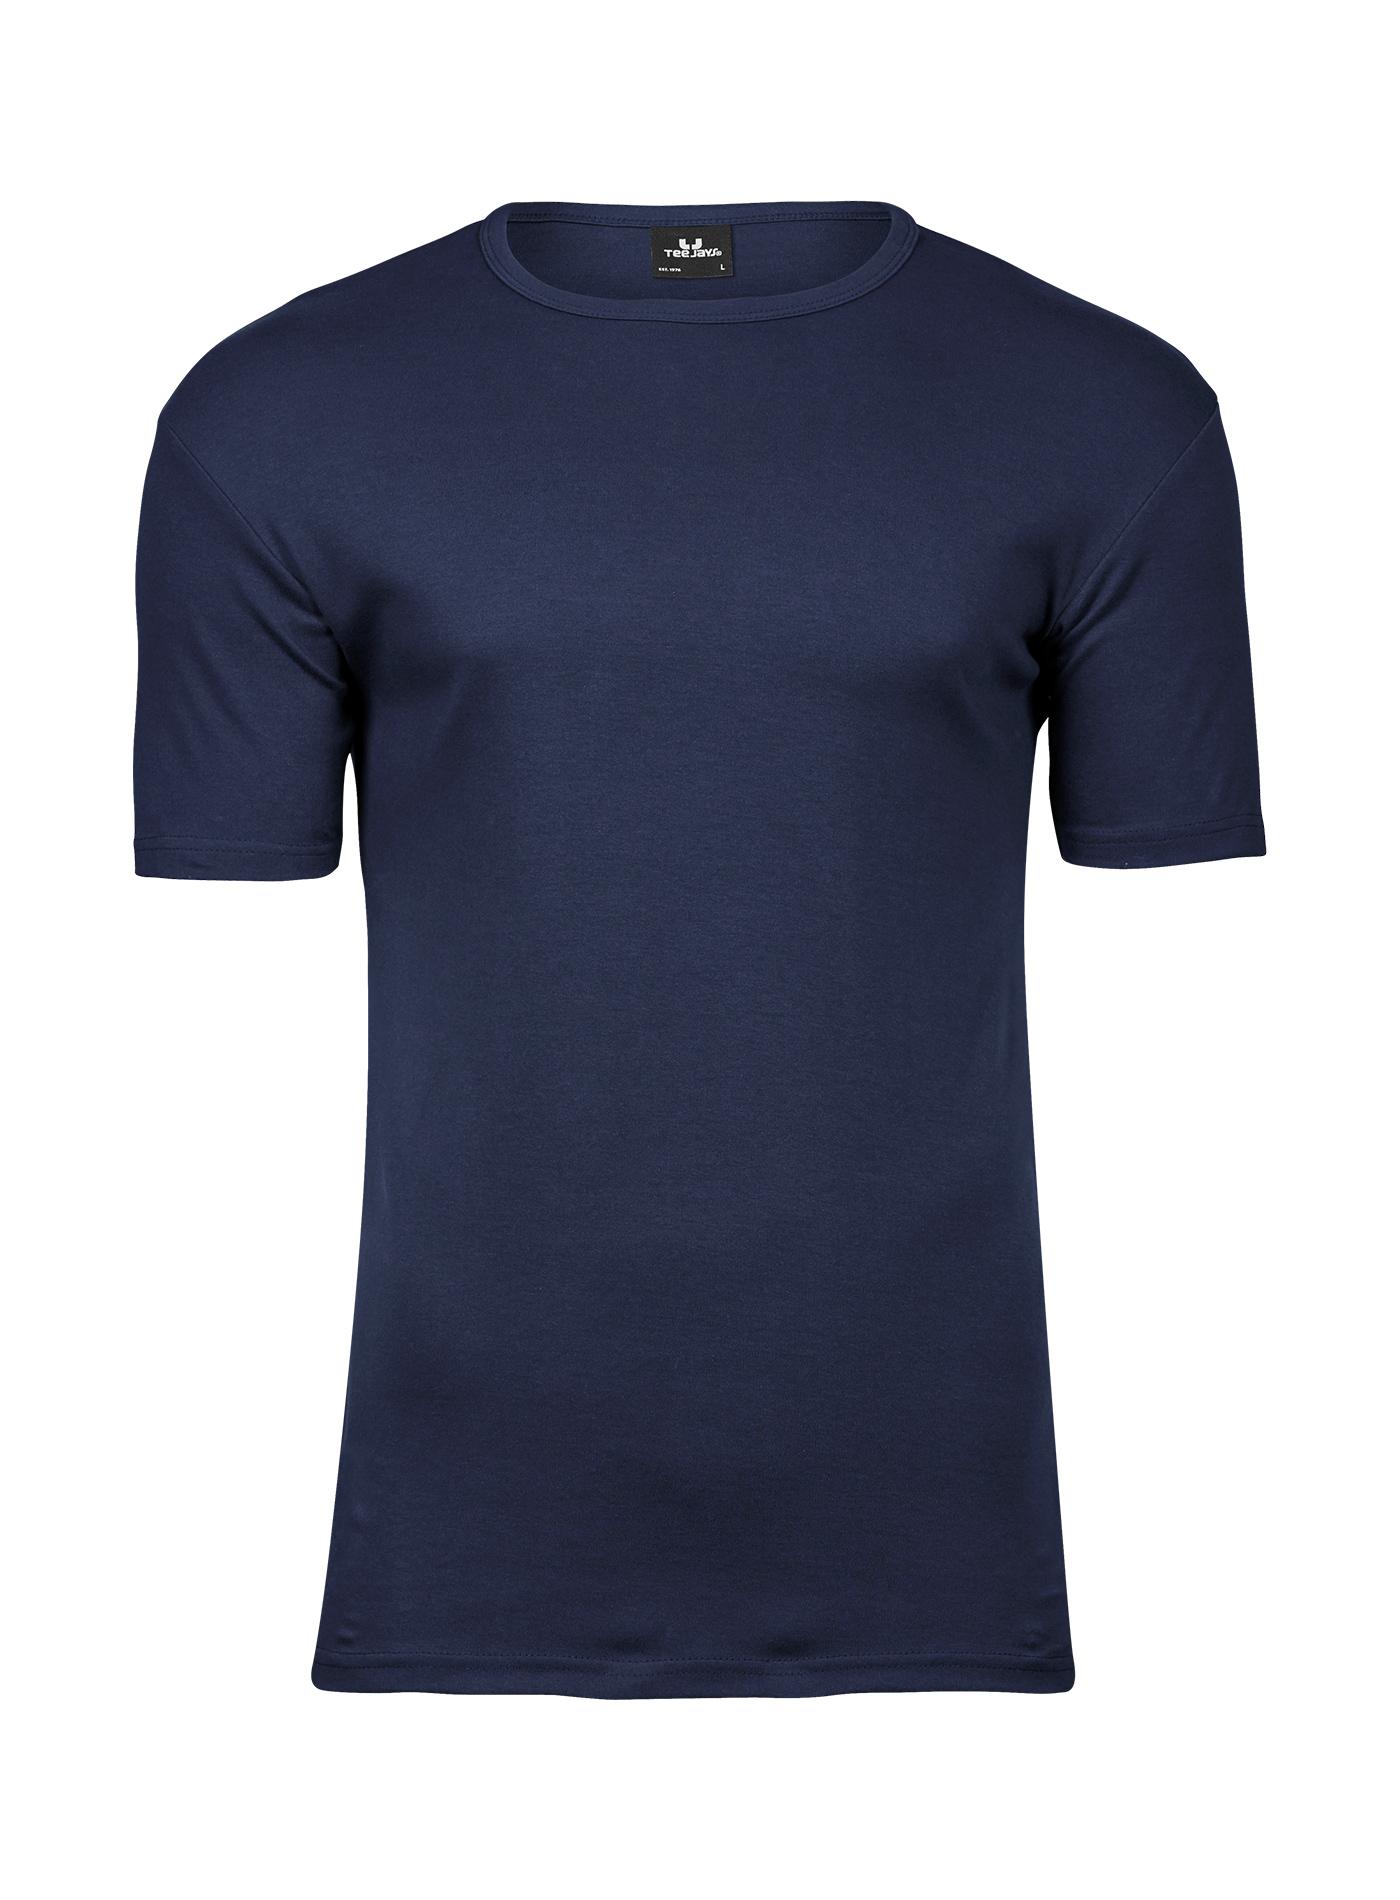 Silné bavlněné tričko Tee Jays Interlock - Námořní modrá XL